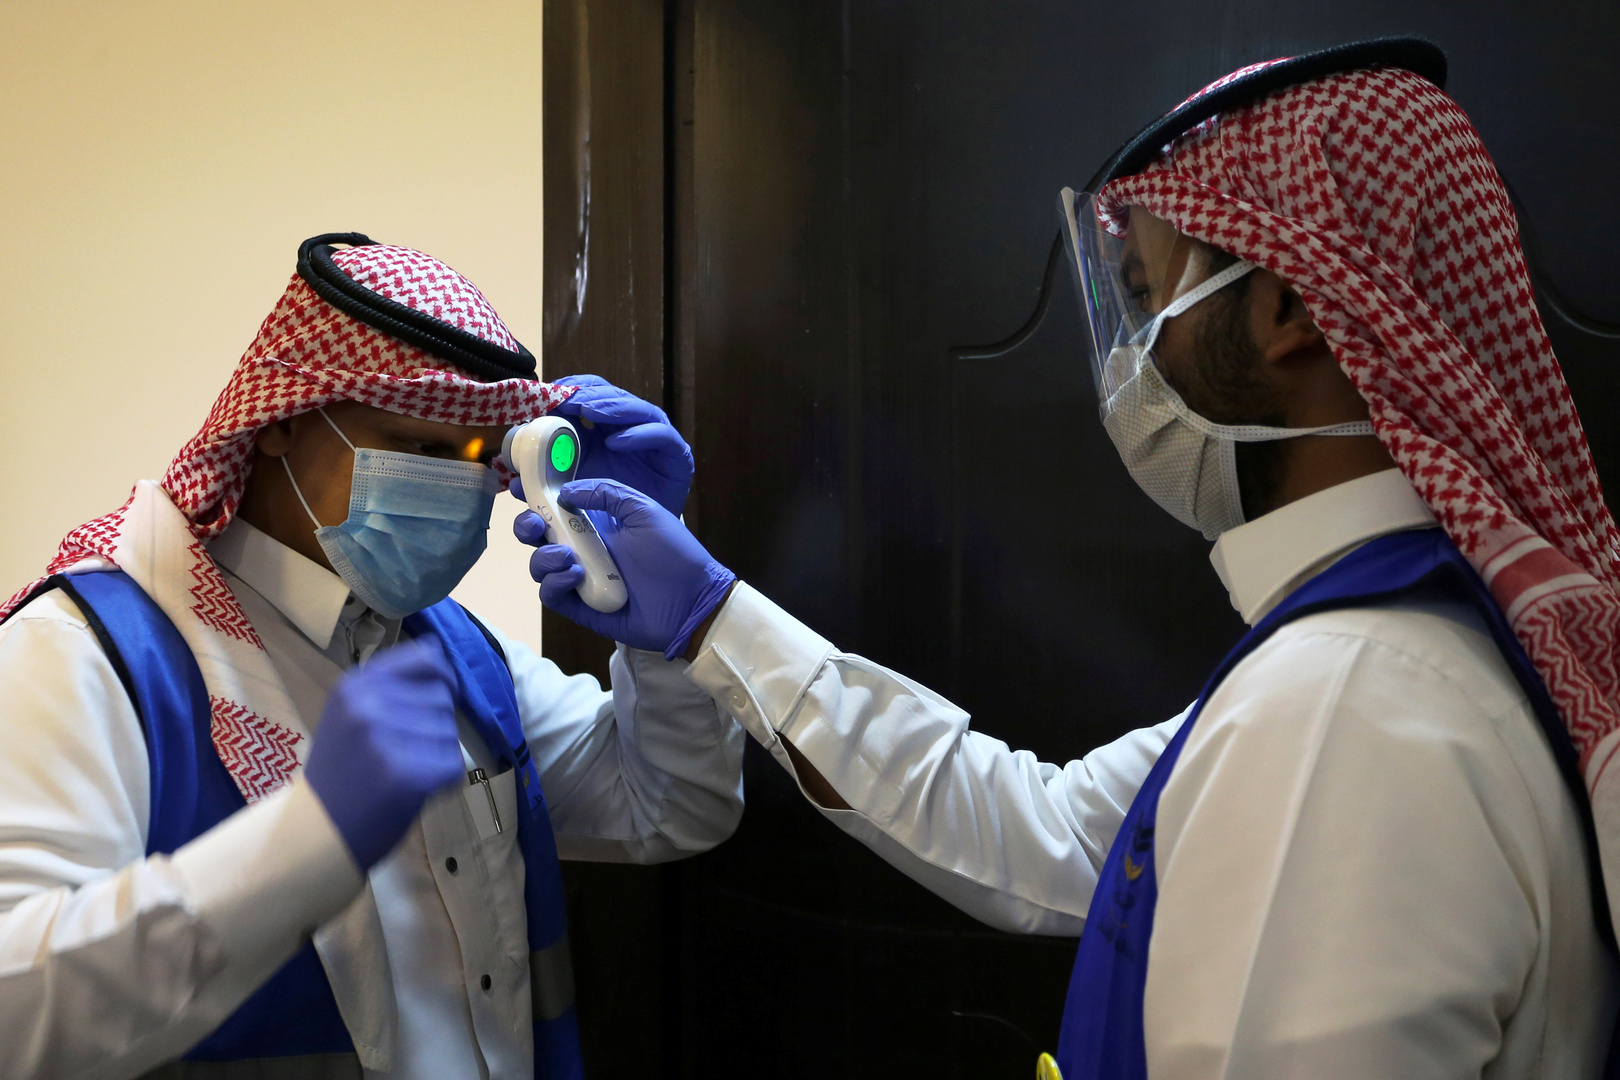 إصابات كورونا في السعودية فوق الـ300 لليوم الـ5 ووزارة الصحة تحذر من زيادة وتيرة تفشي الوباء